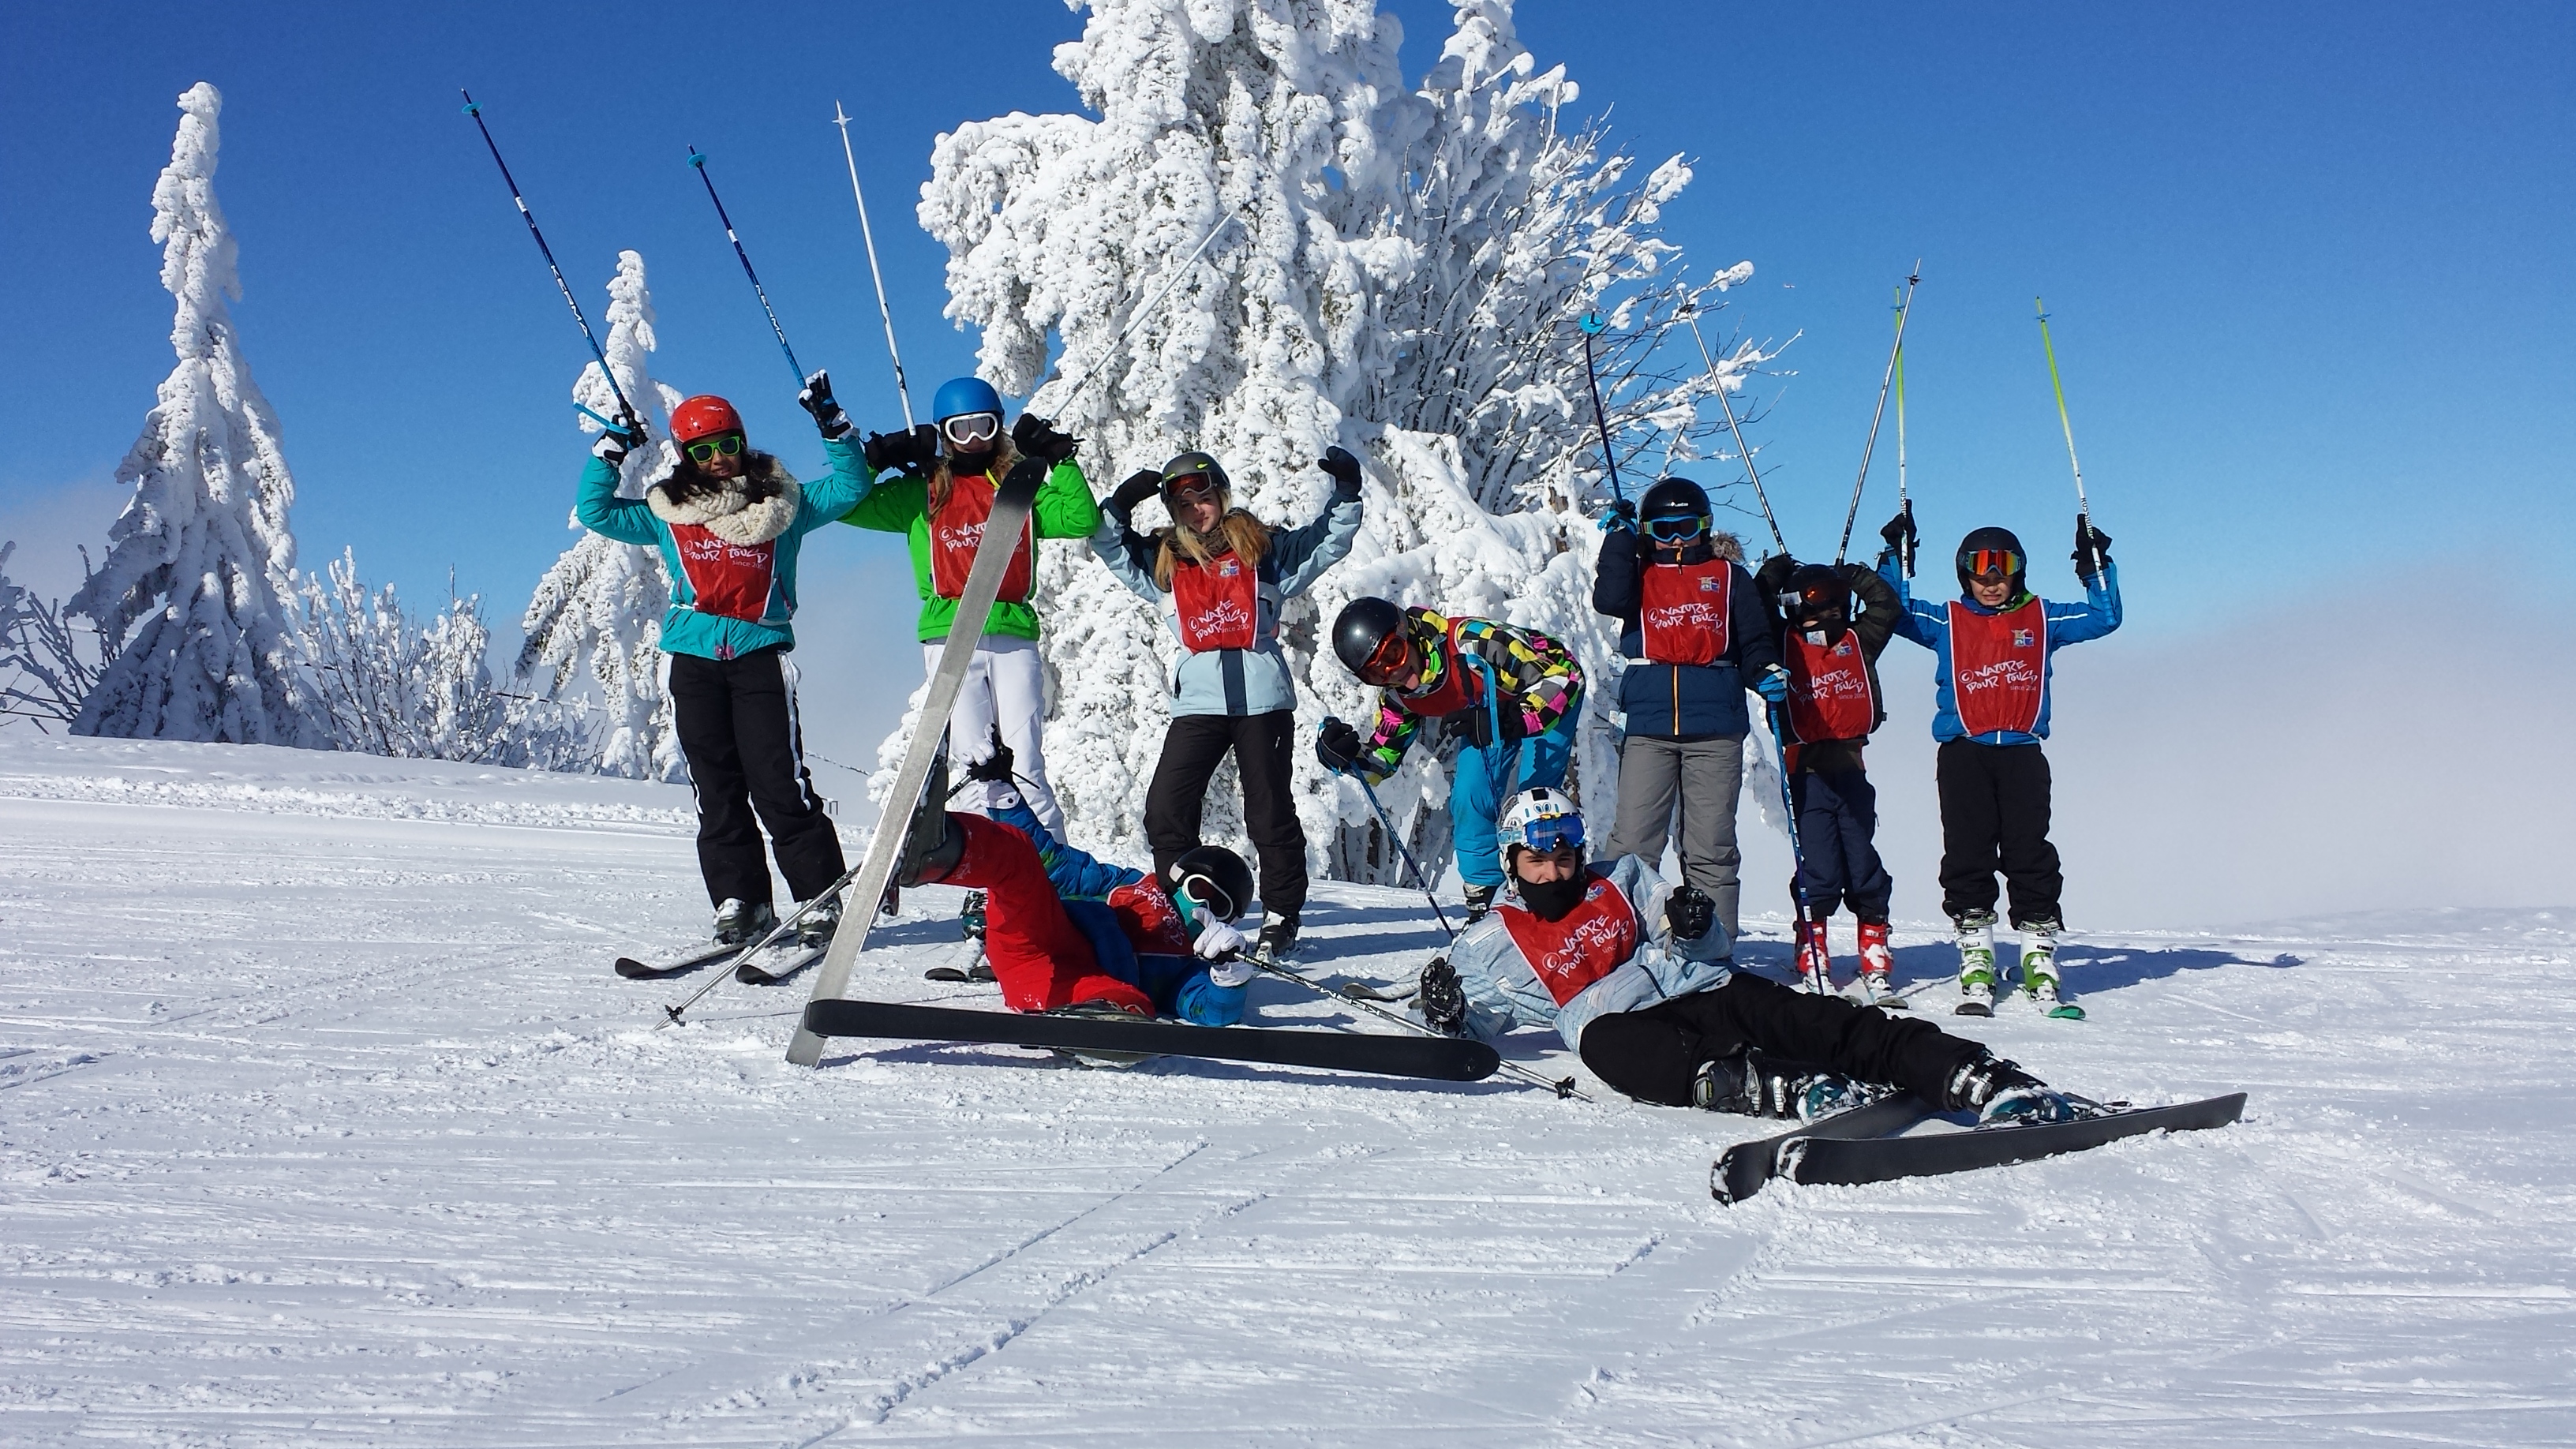 Colonie de vacances cours de ski pour enfant de 6 - 10 ans